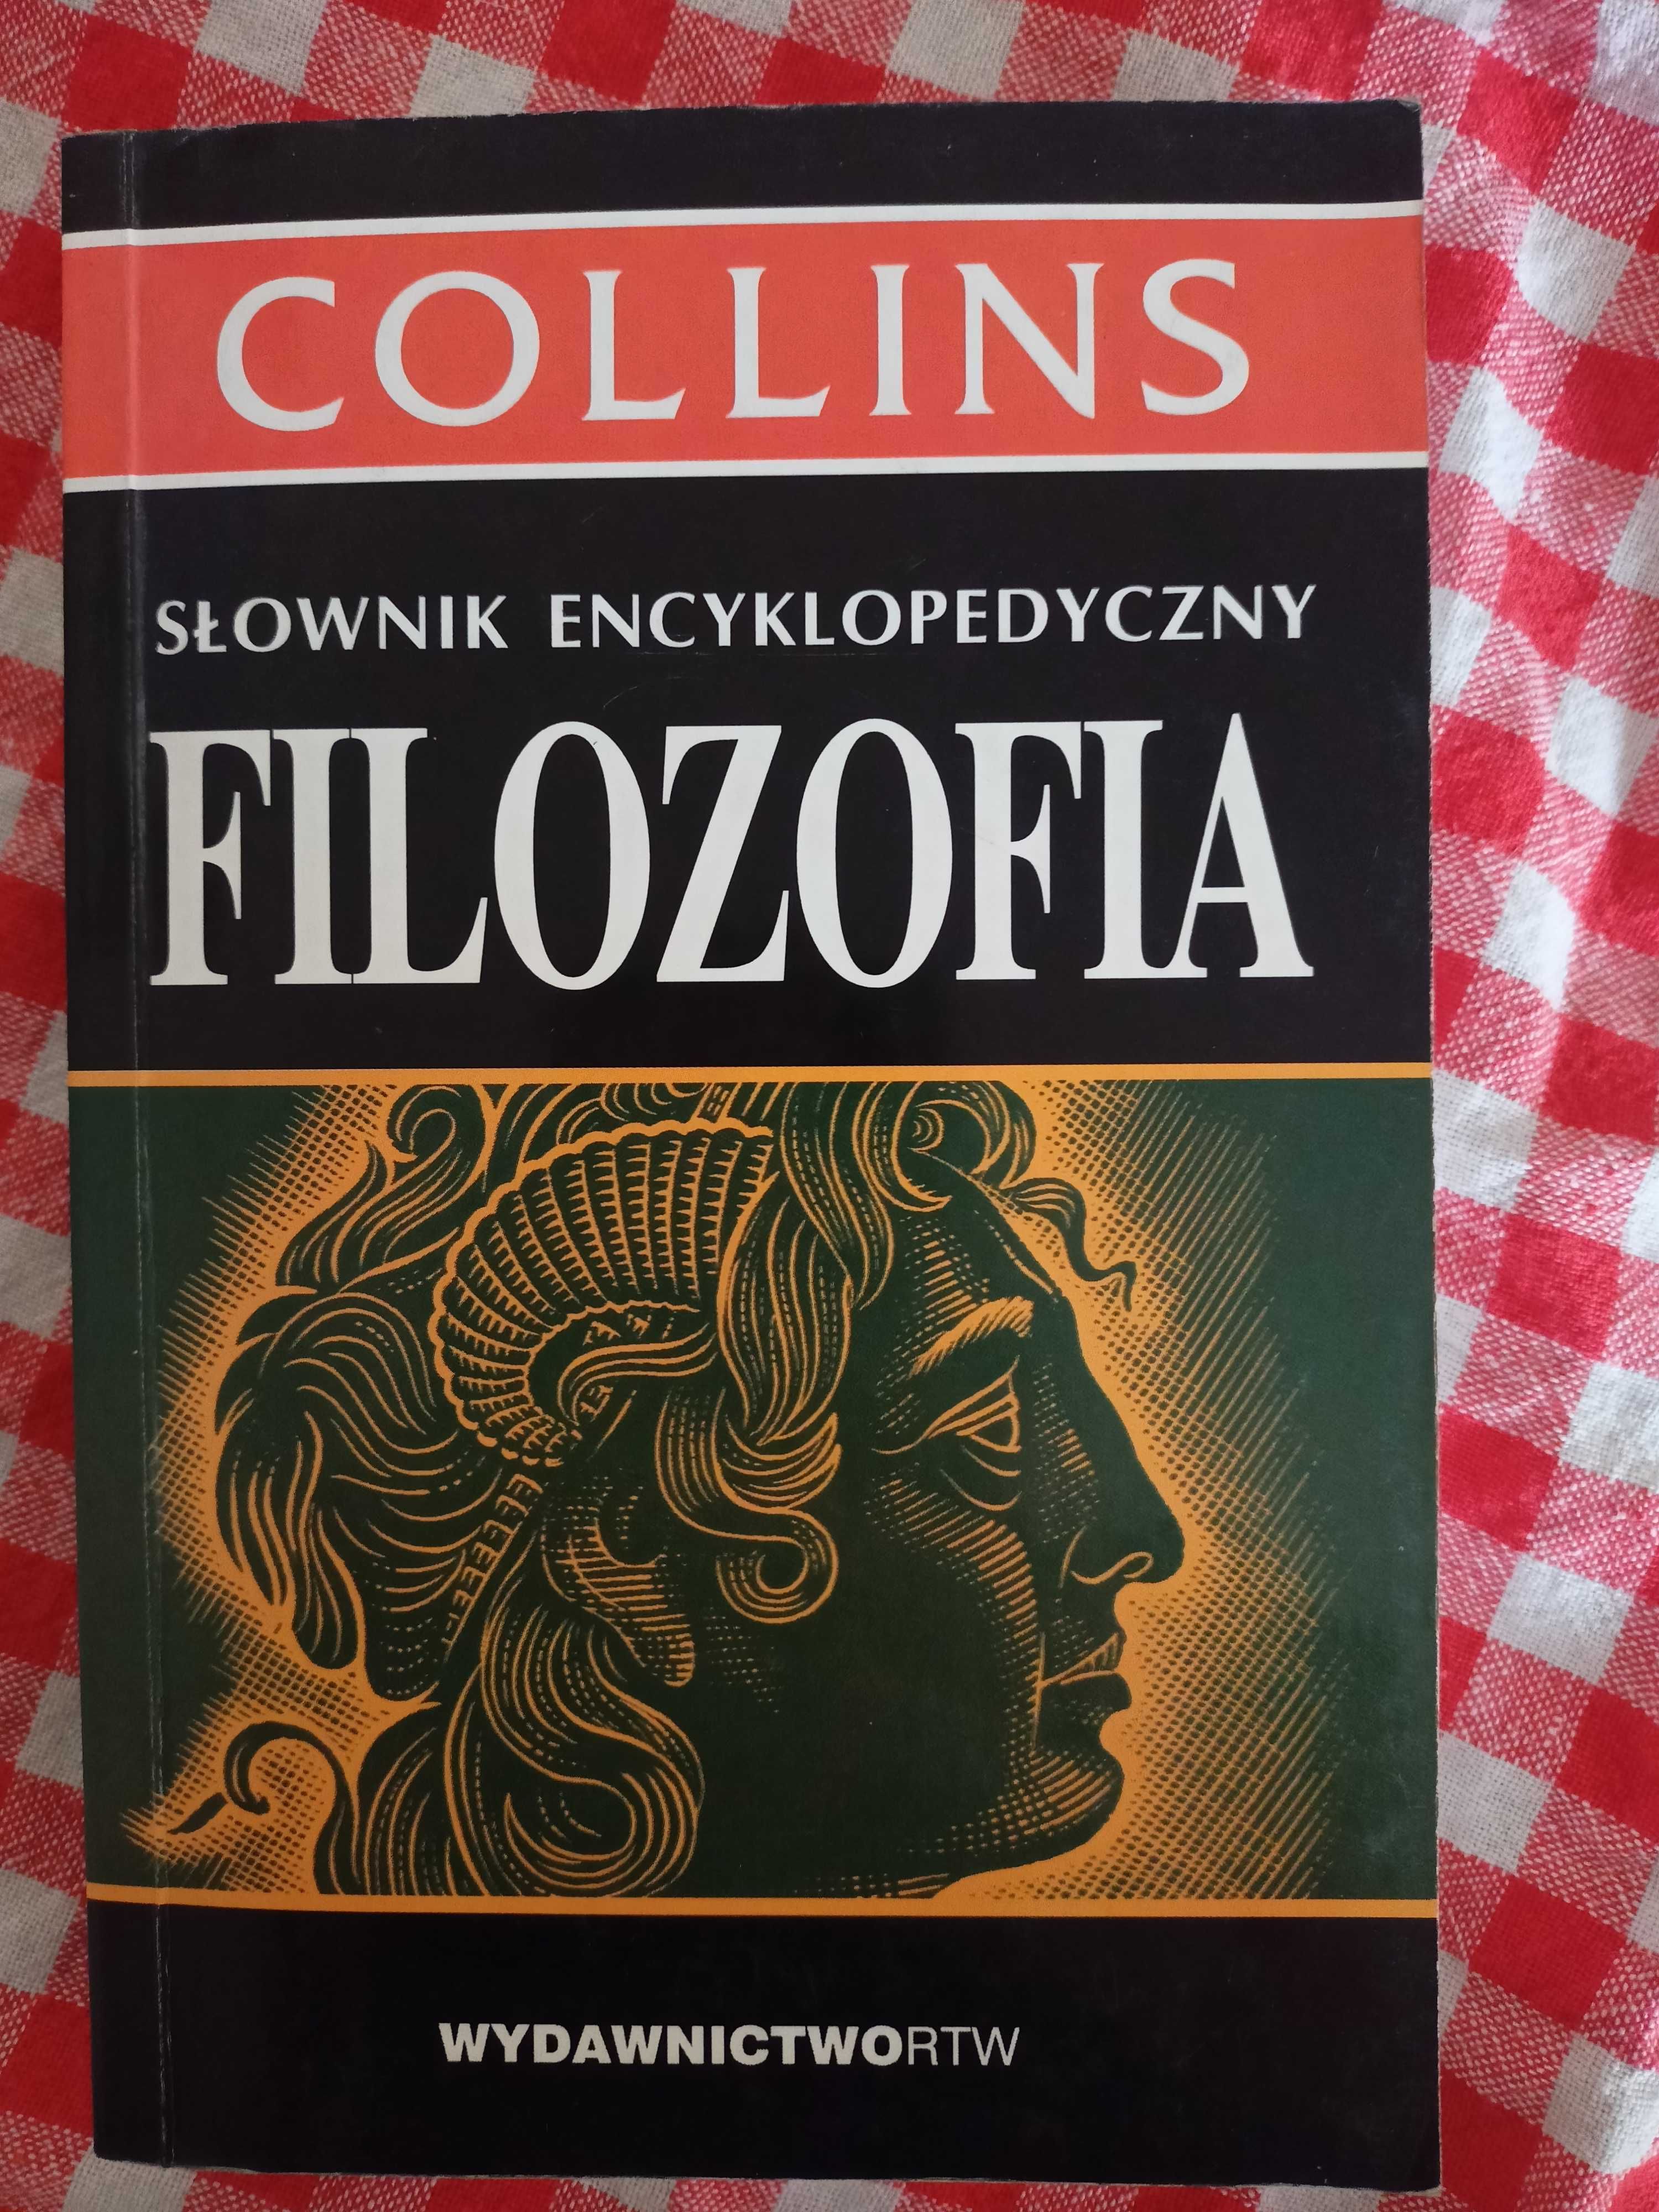 Collins słownik encyklopedyczny filozofa